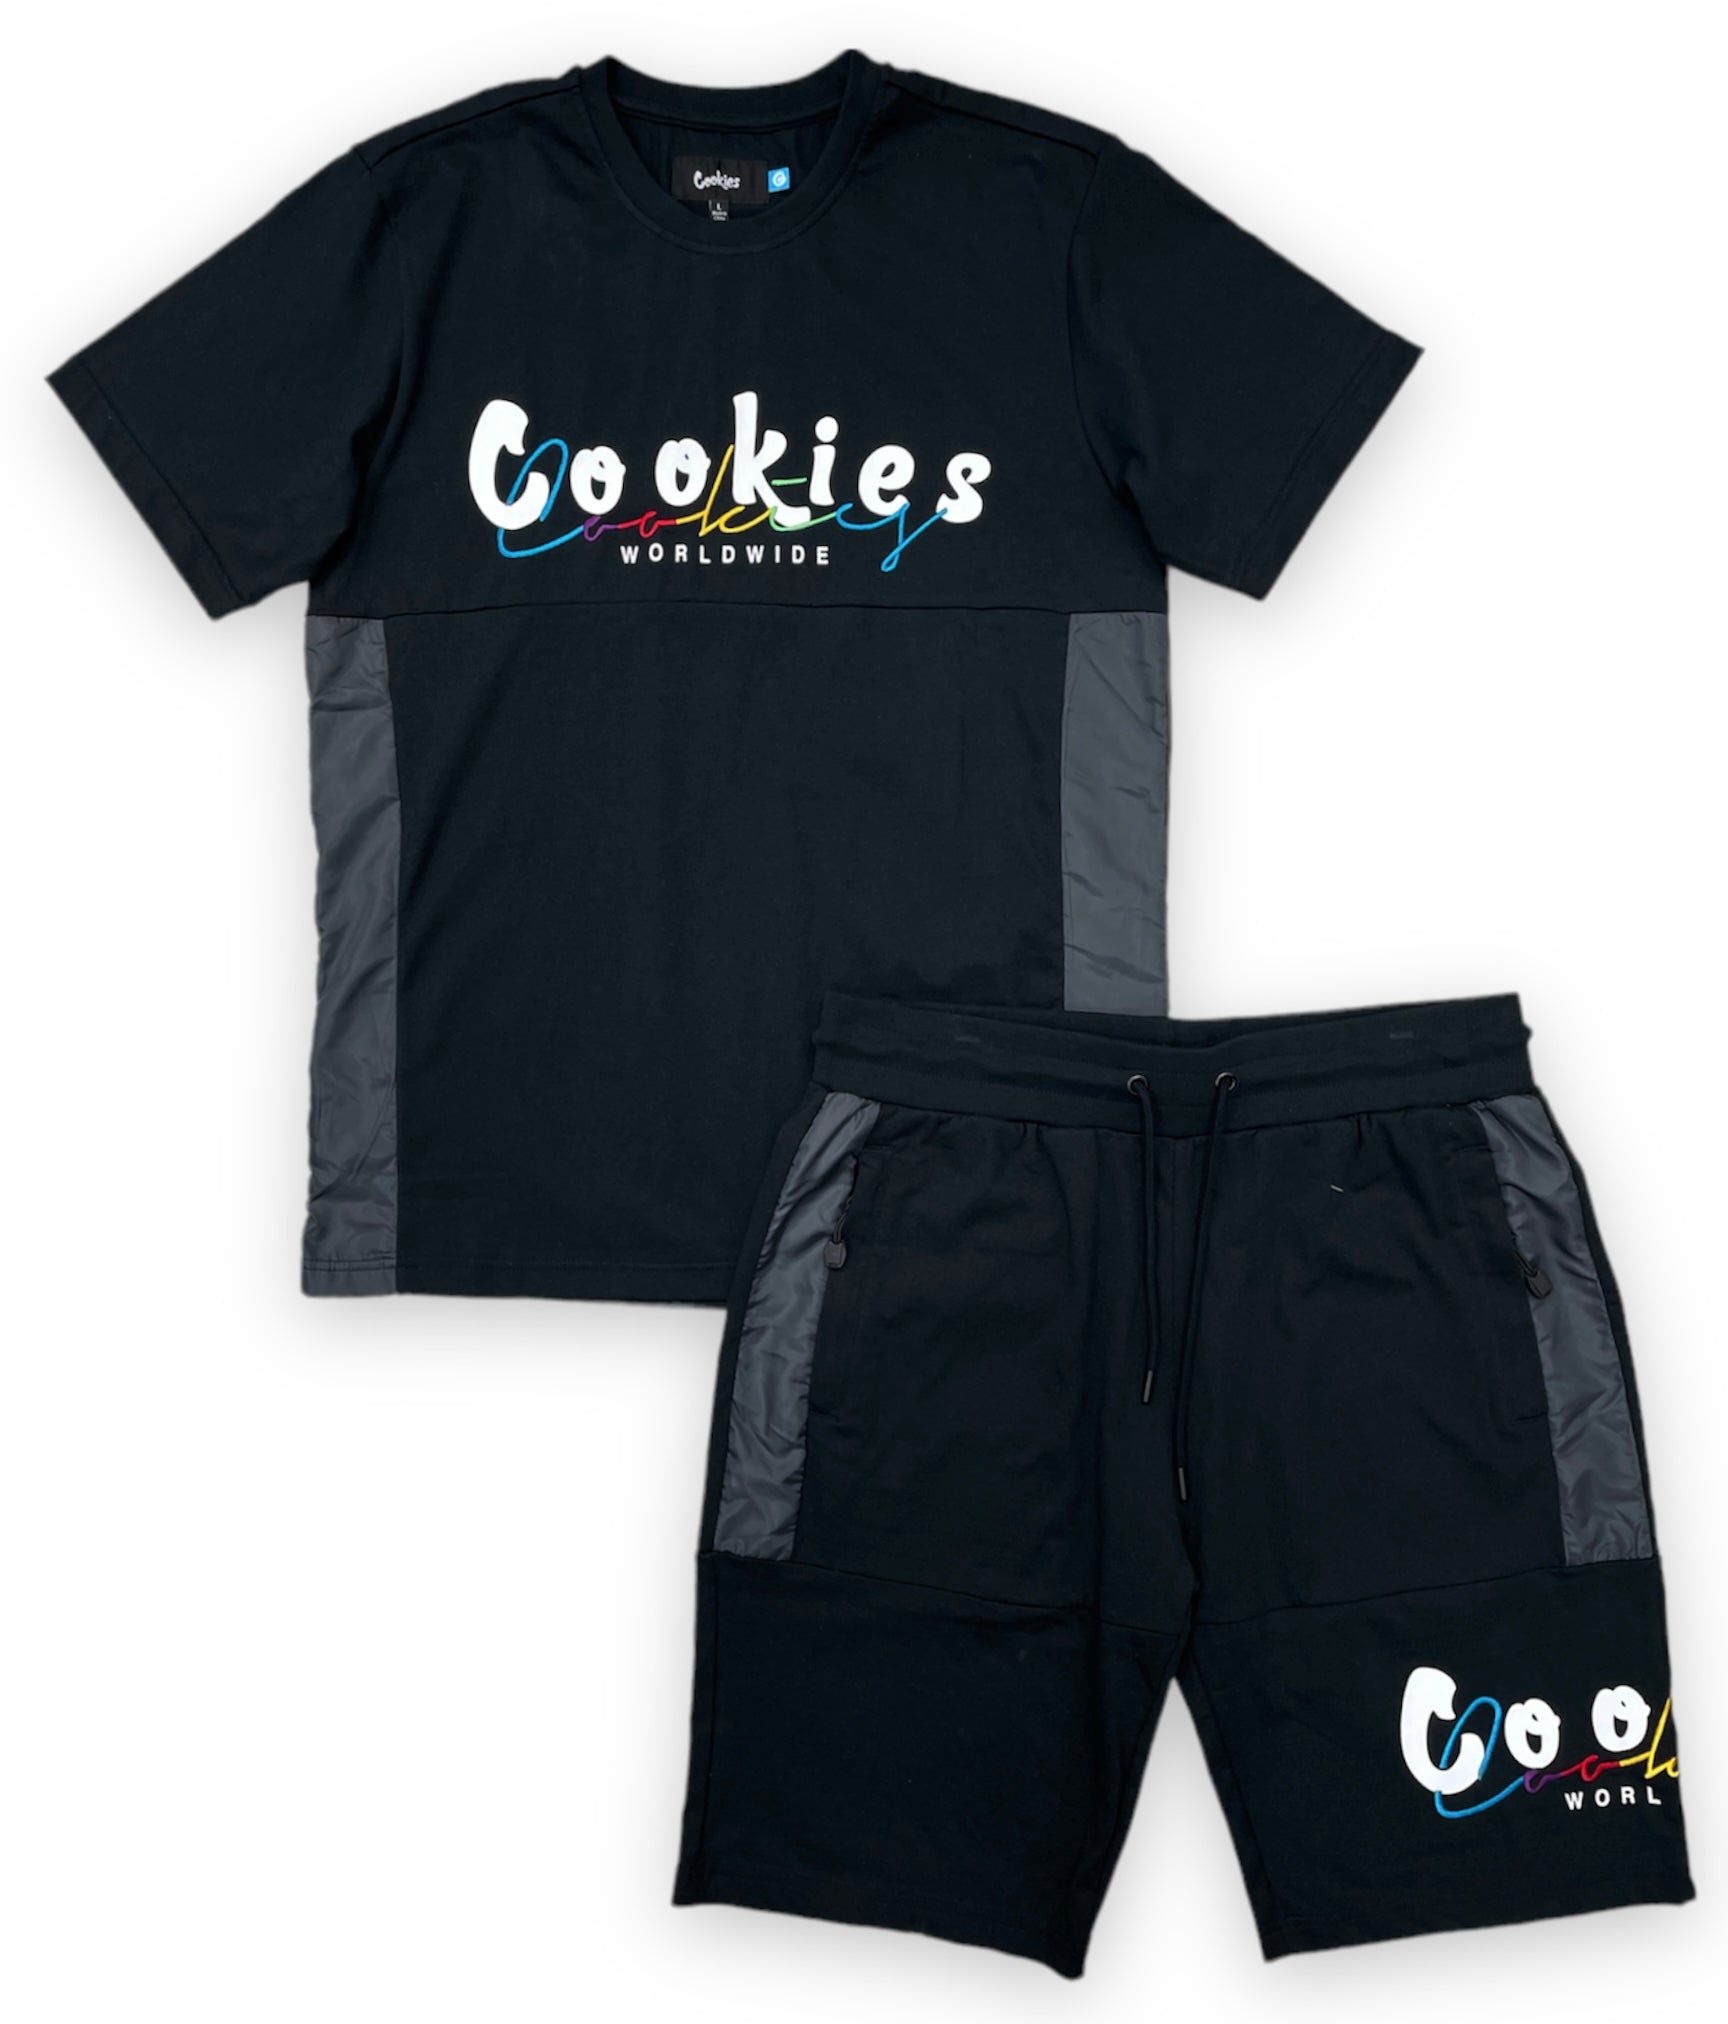 Cookies Short Set